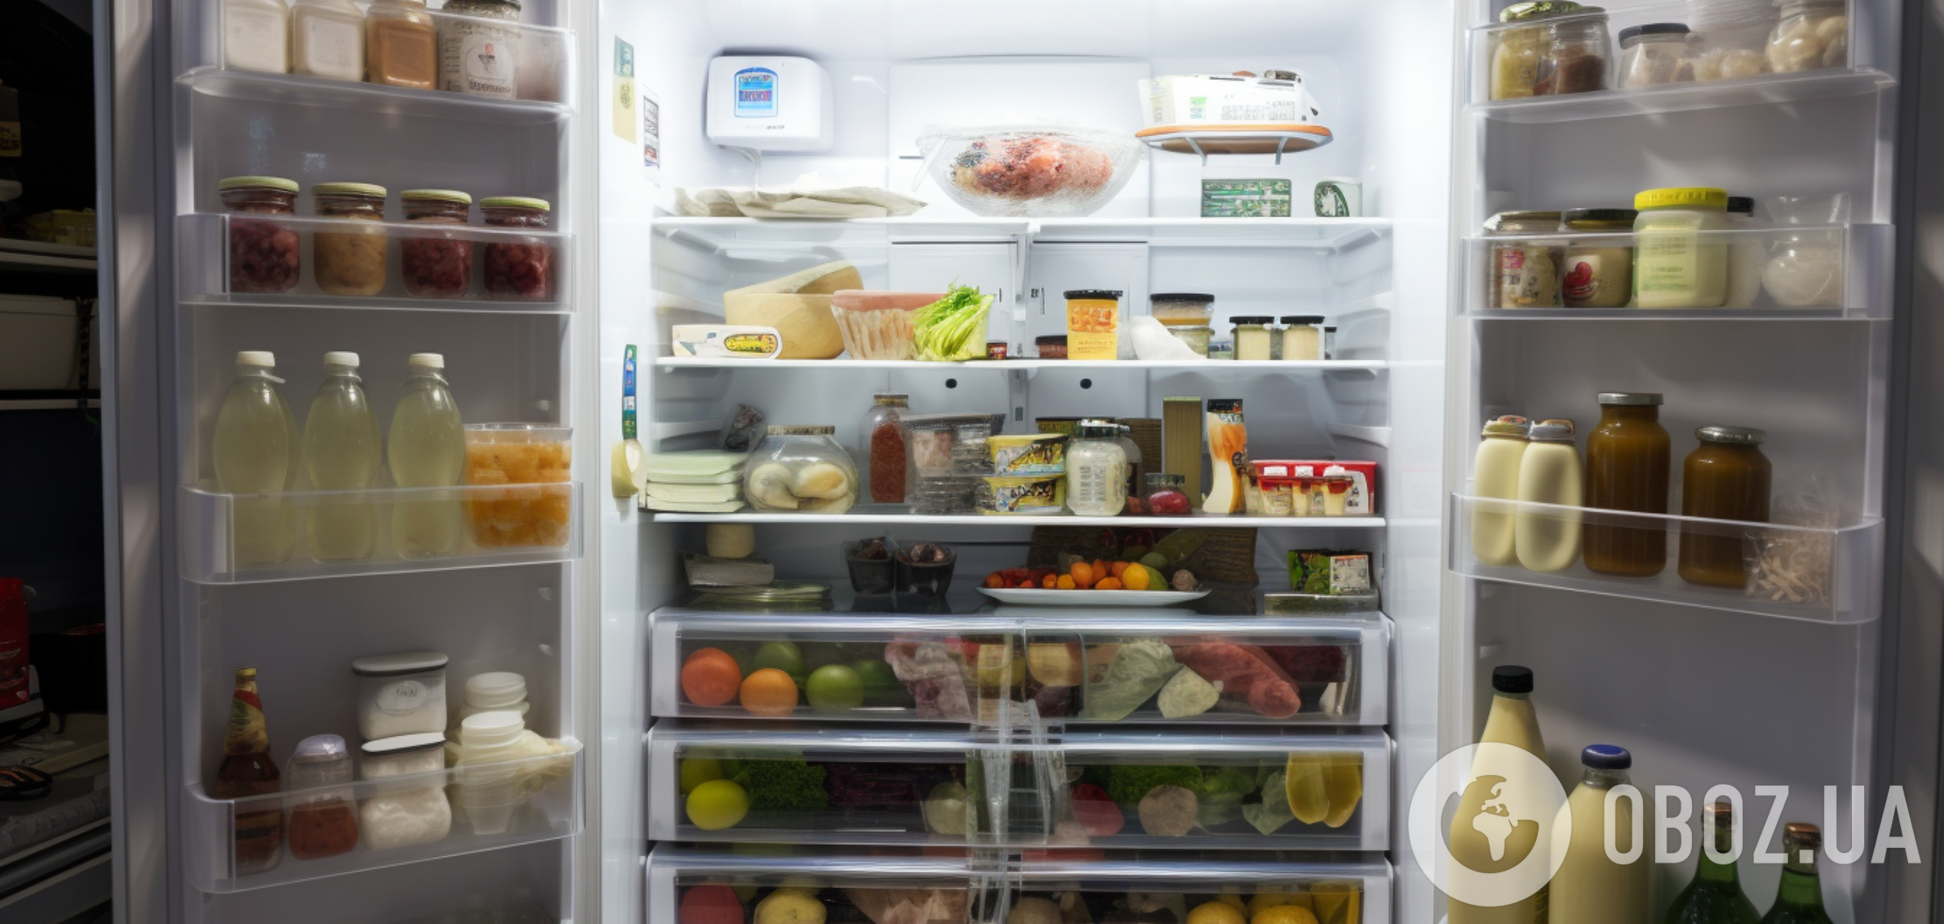 Почему горячую еду нельзя ставить в холодильник: причины, о которых вы не знали